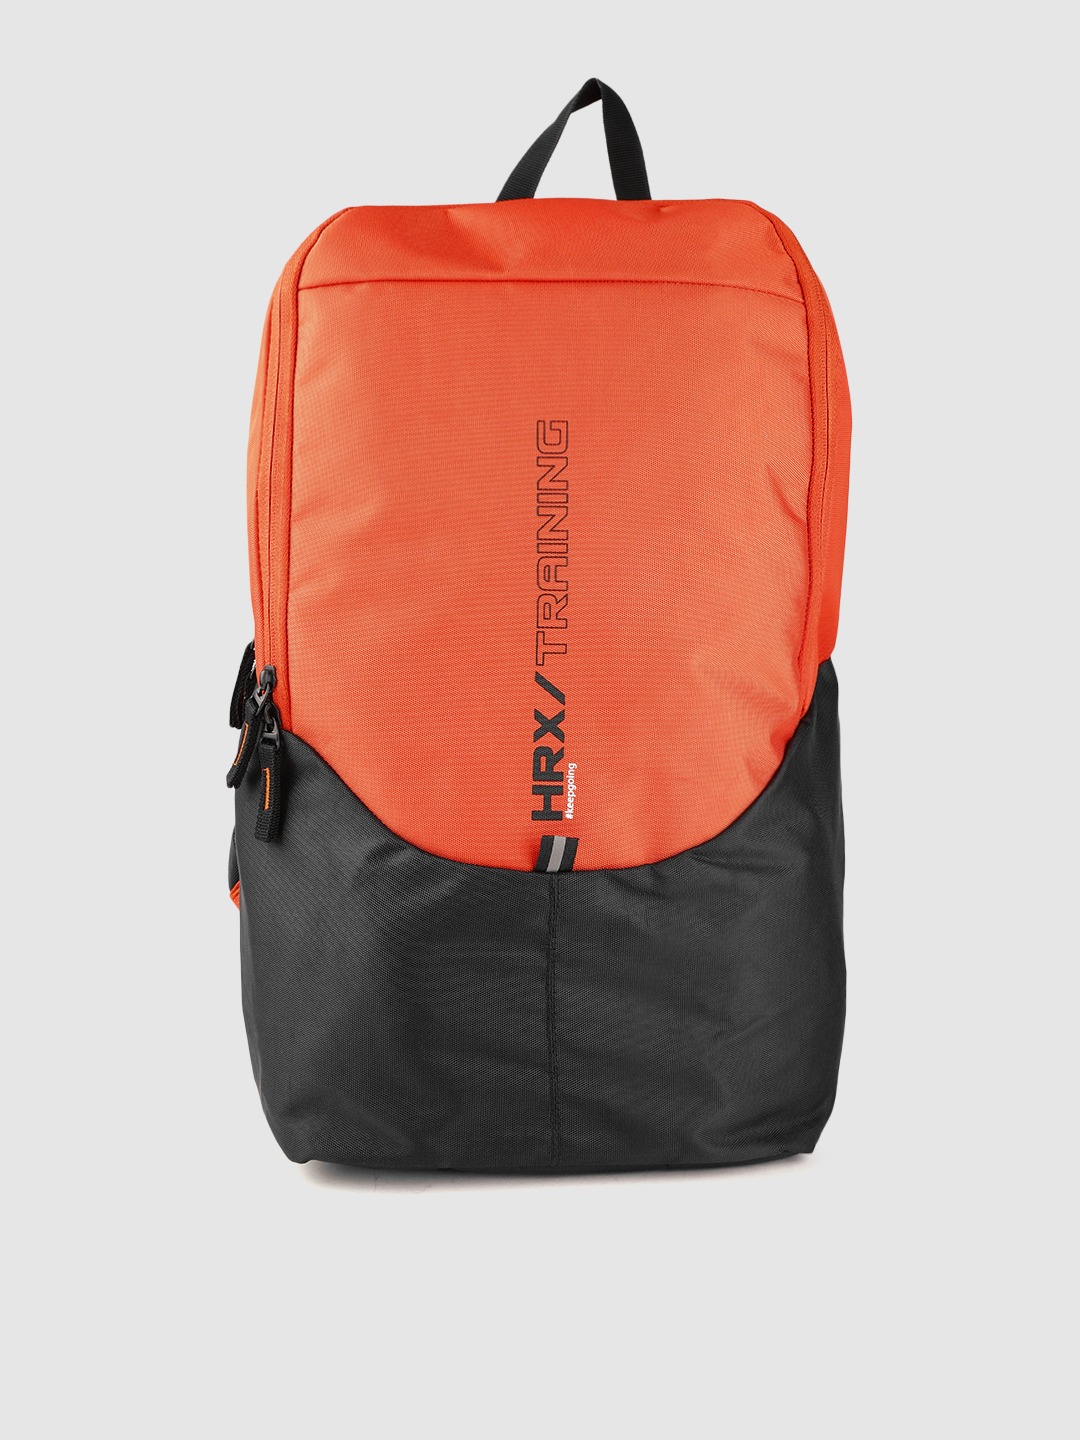 Accessories Backpacks | HRX by Hrithik Roshan Unisex Orange & Black Colourblocked 16 Inch Laptop Backpack - KK11552